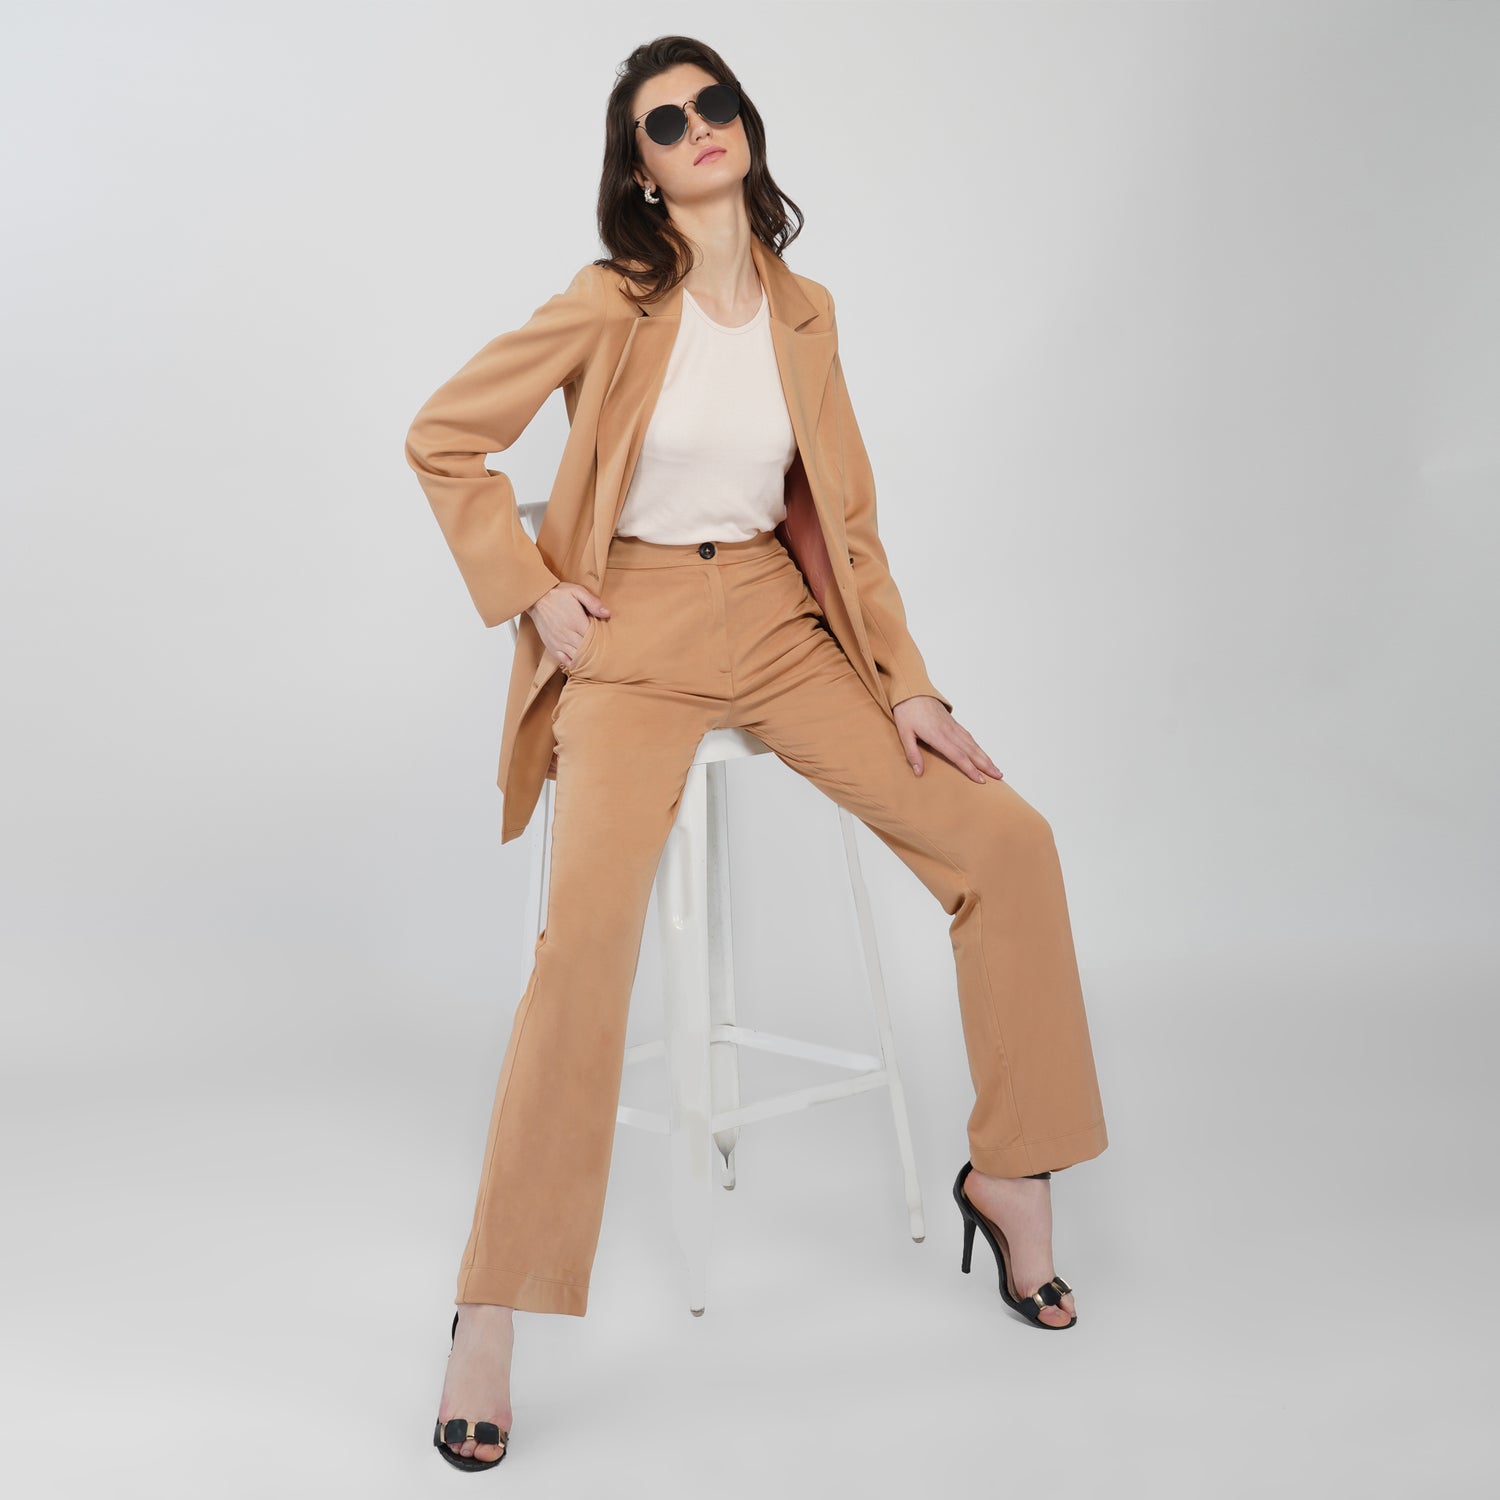 Buy Maroon Suit Sets for Women by Delan Online  Ajiocom